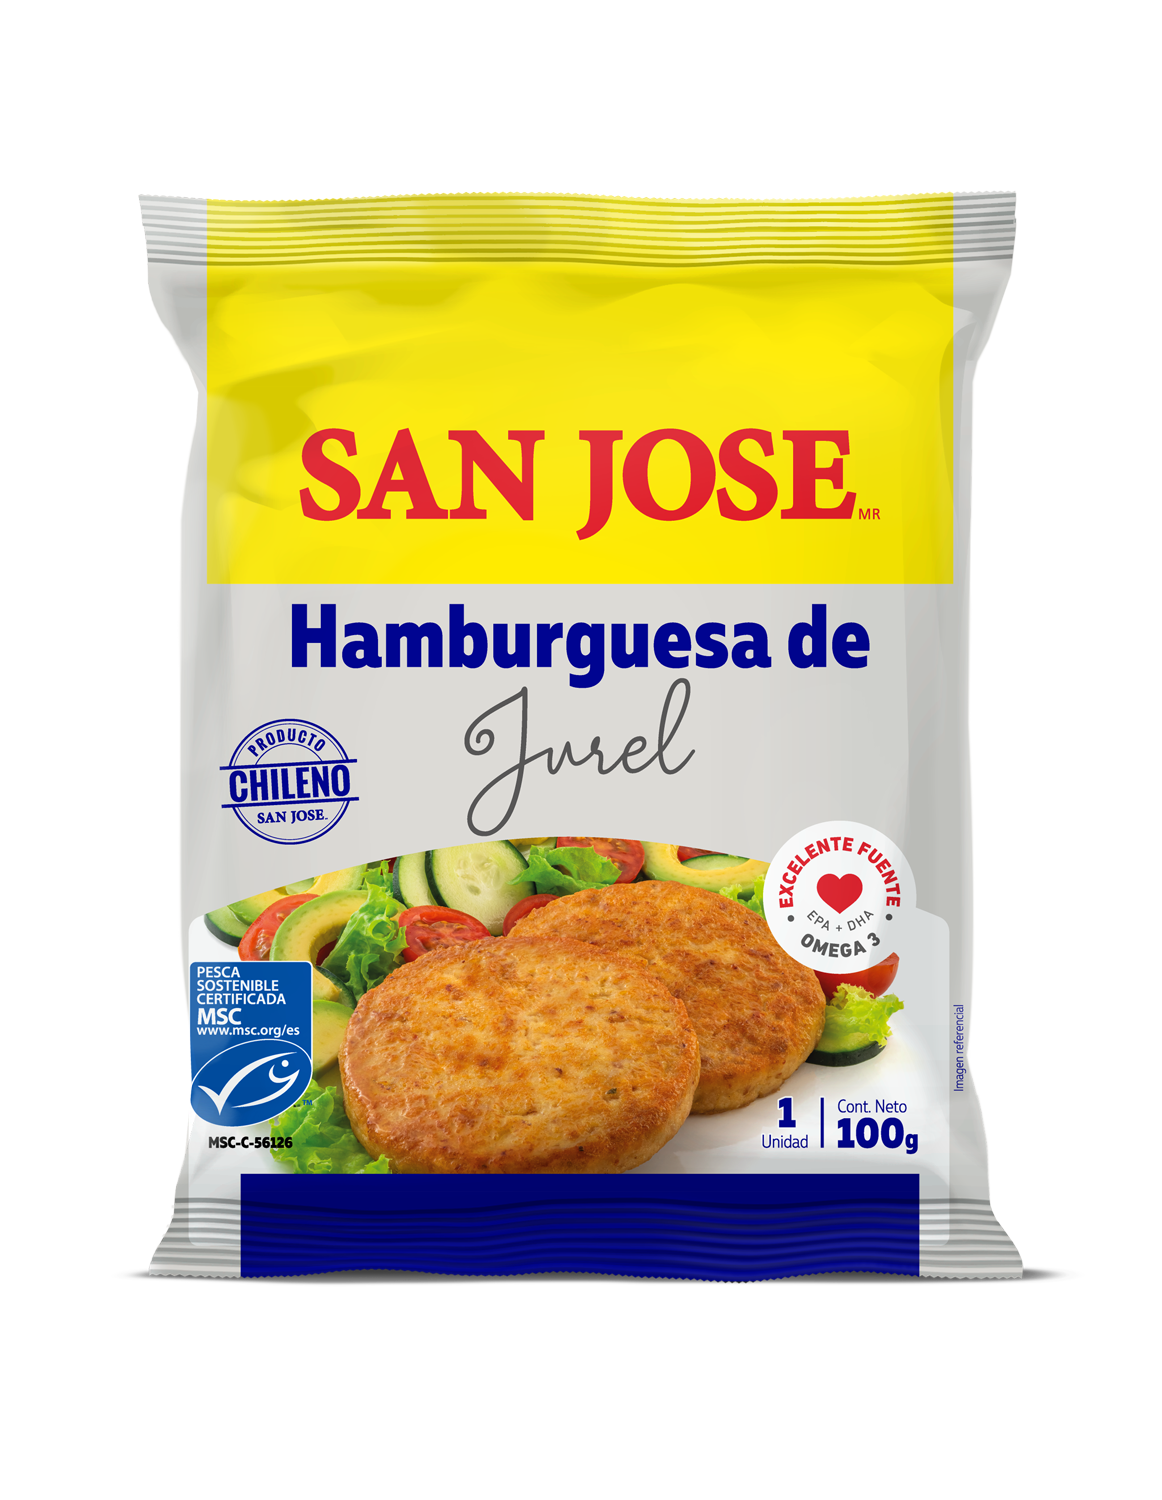 Hamburguesas y lomos de jurel chileno se abren espacio en supermercados de Estados Unidos